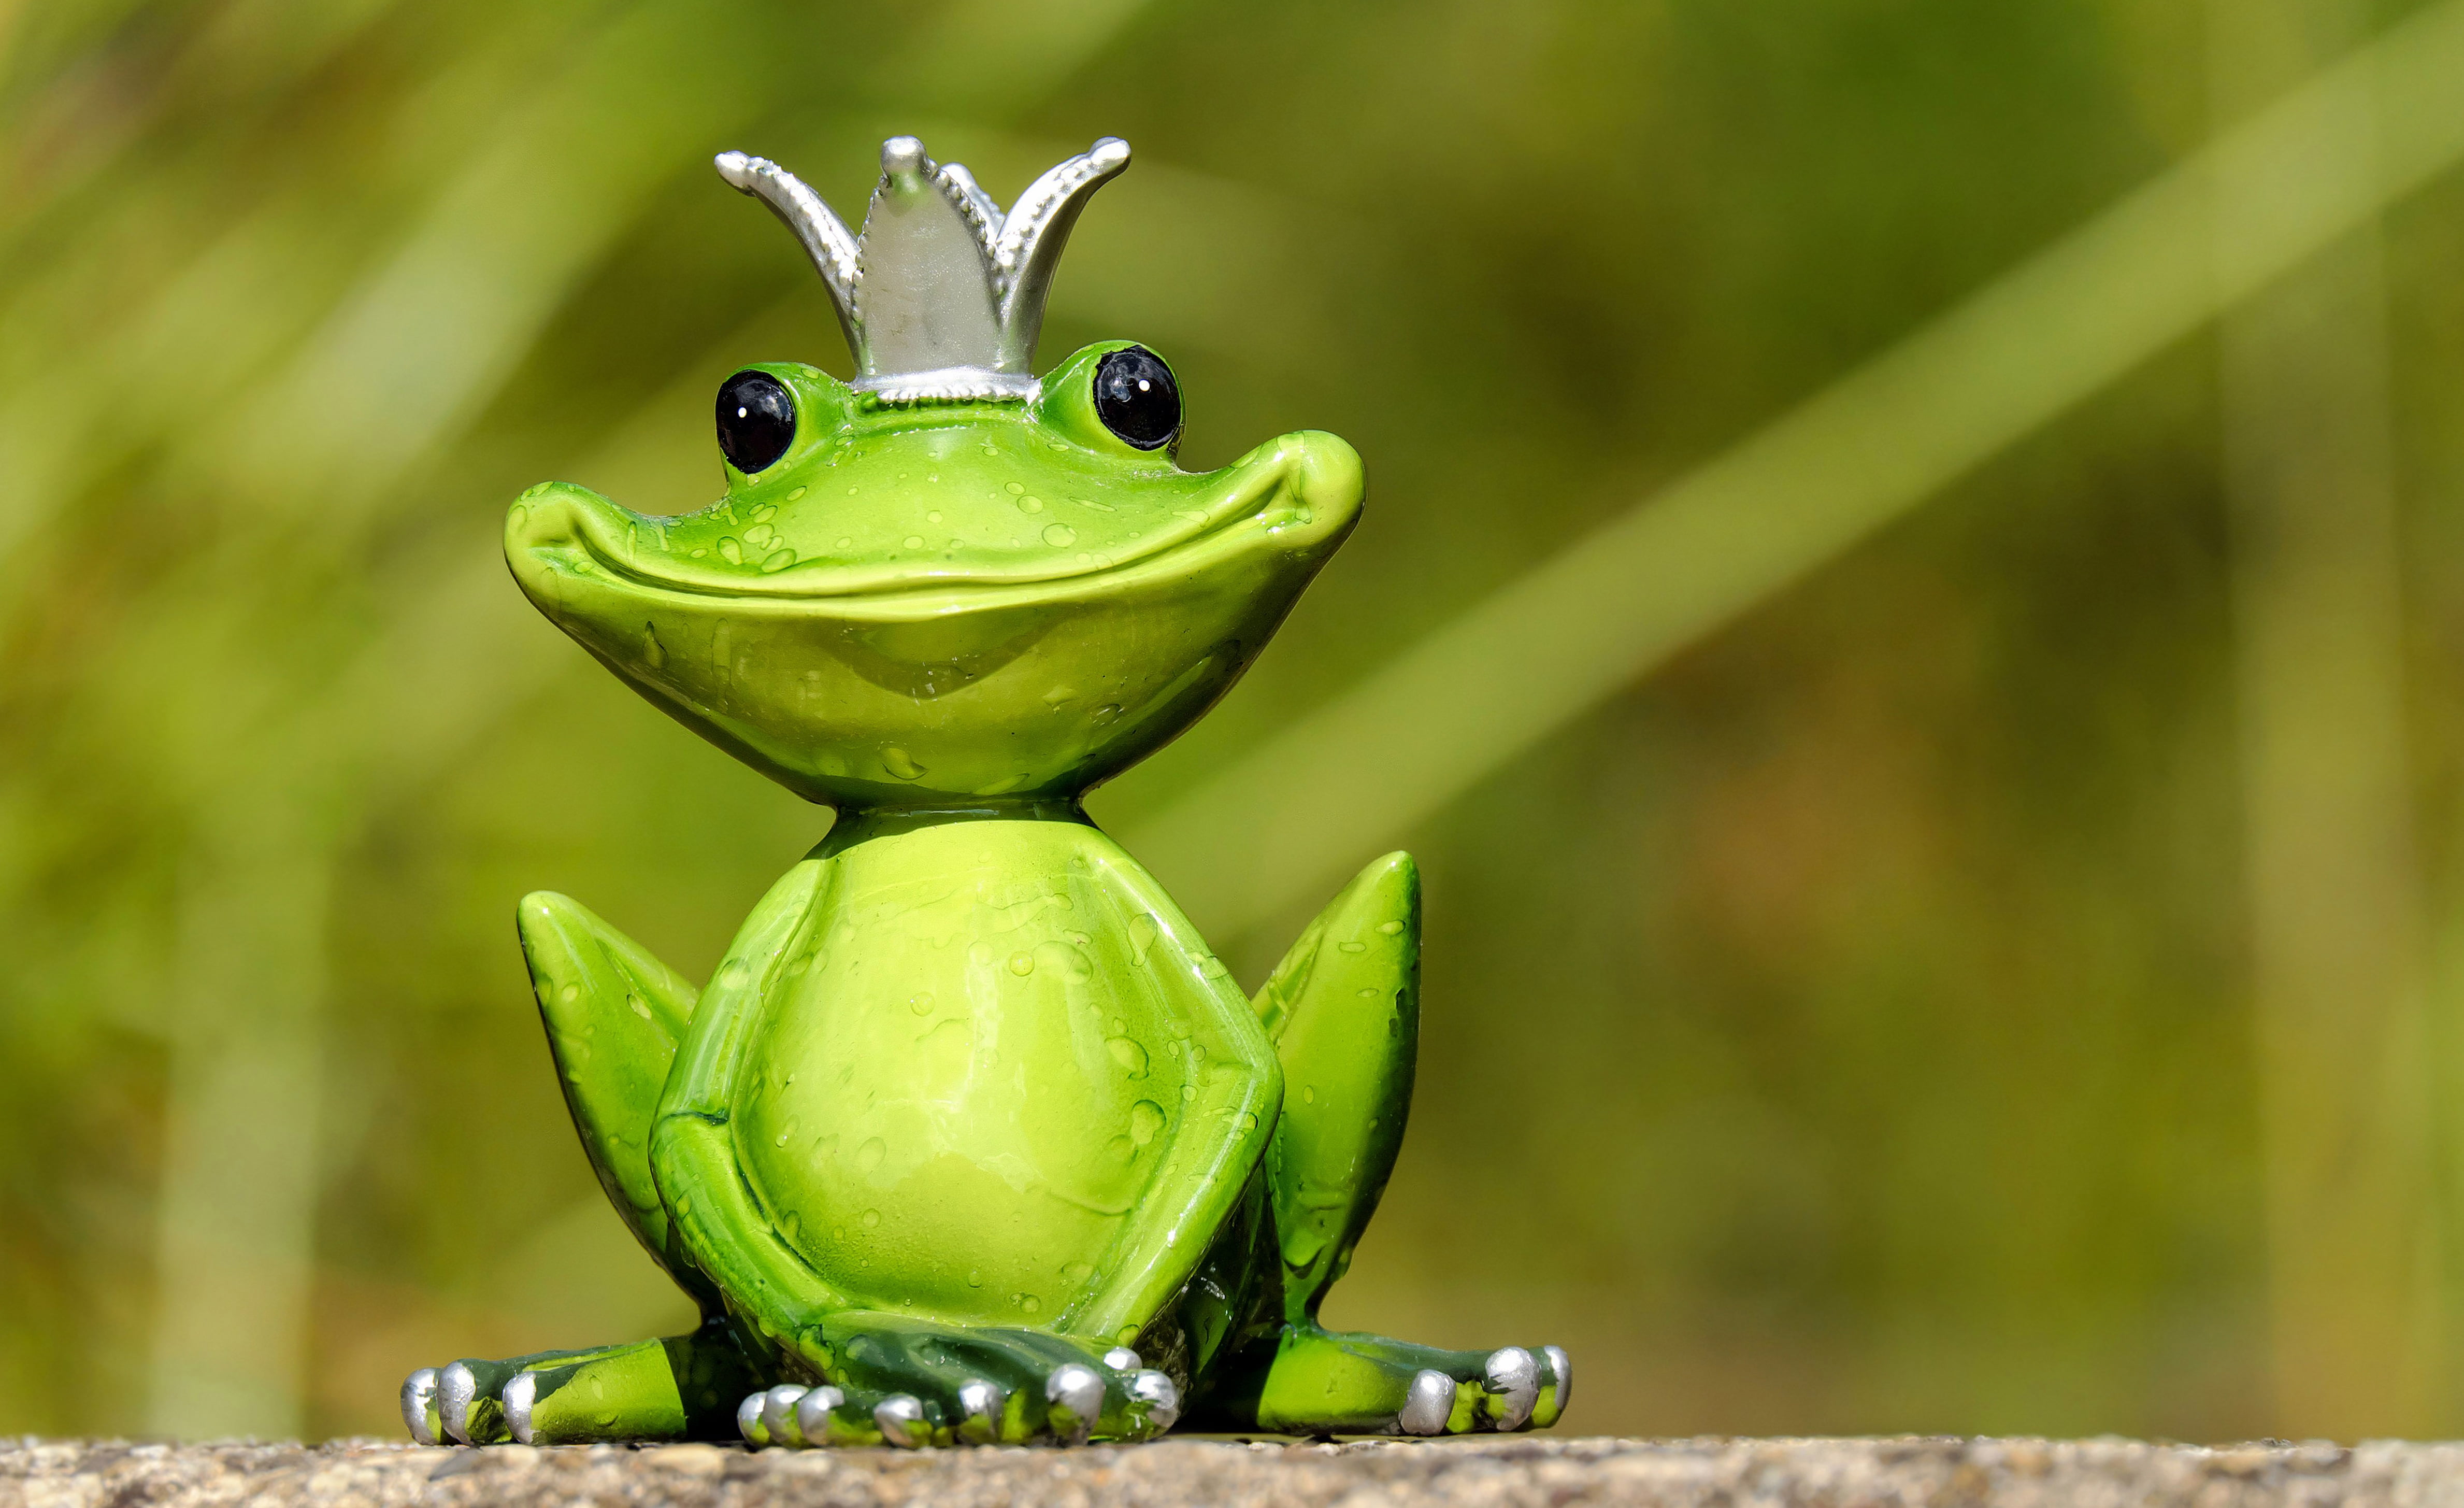 Tượng ếch vua xanh trên nền tường cực kỳ đáng yêu và độc đáo. Nhìn những chi tiết nhỏ xinh trên tượng, bạn sẽ không thể nhịn được cười trước vẻ đáng yêu của chú ếch vua xanh này. Hình ảnh này sẽ đem lại cho bạn cảm giác vui tươi và tươi mới, và là lựa chọn hoàn hảo để trang trí không gian sống của bạn.